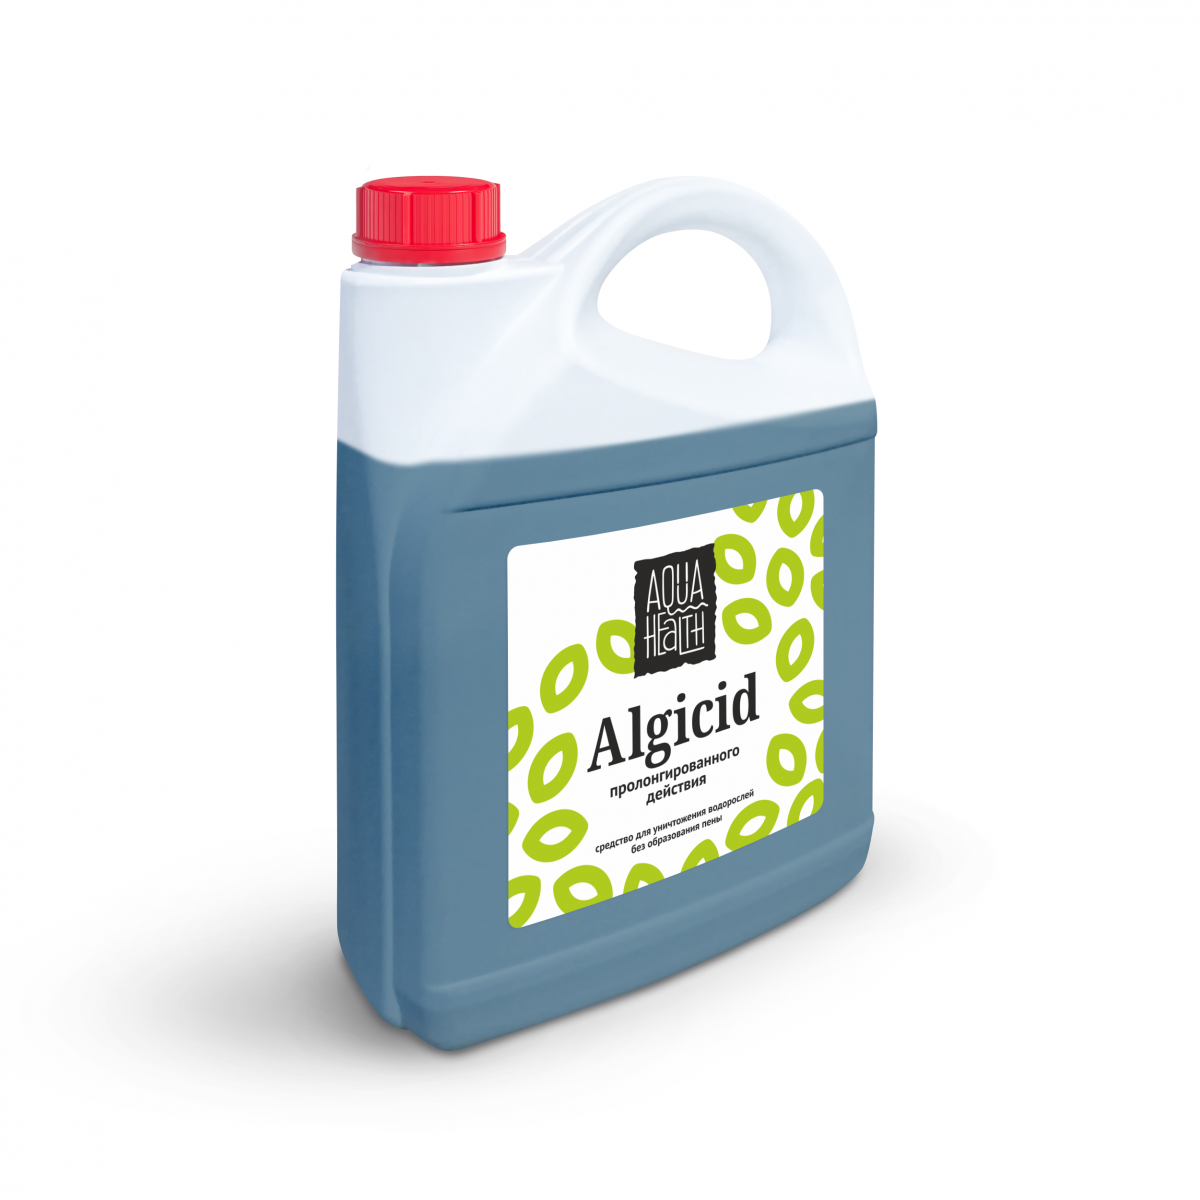 Купить средство против водорослей - Средство от водорослей Aqua Health ALGICIDE (пролонгированного действия) 5кг